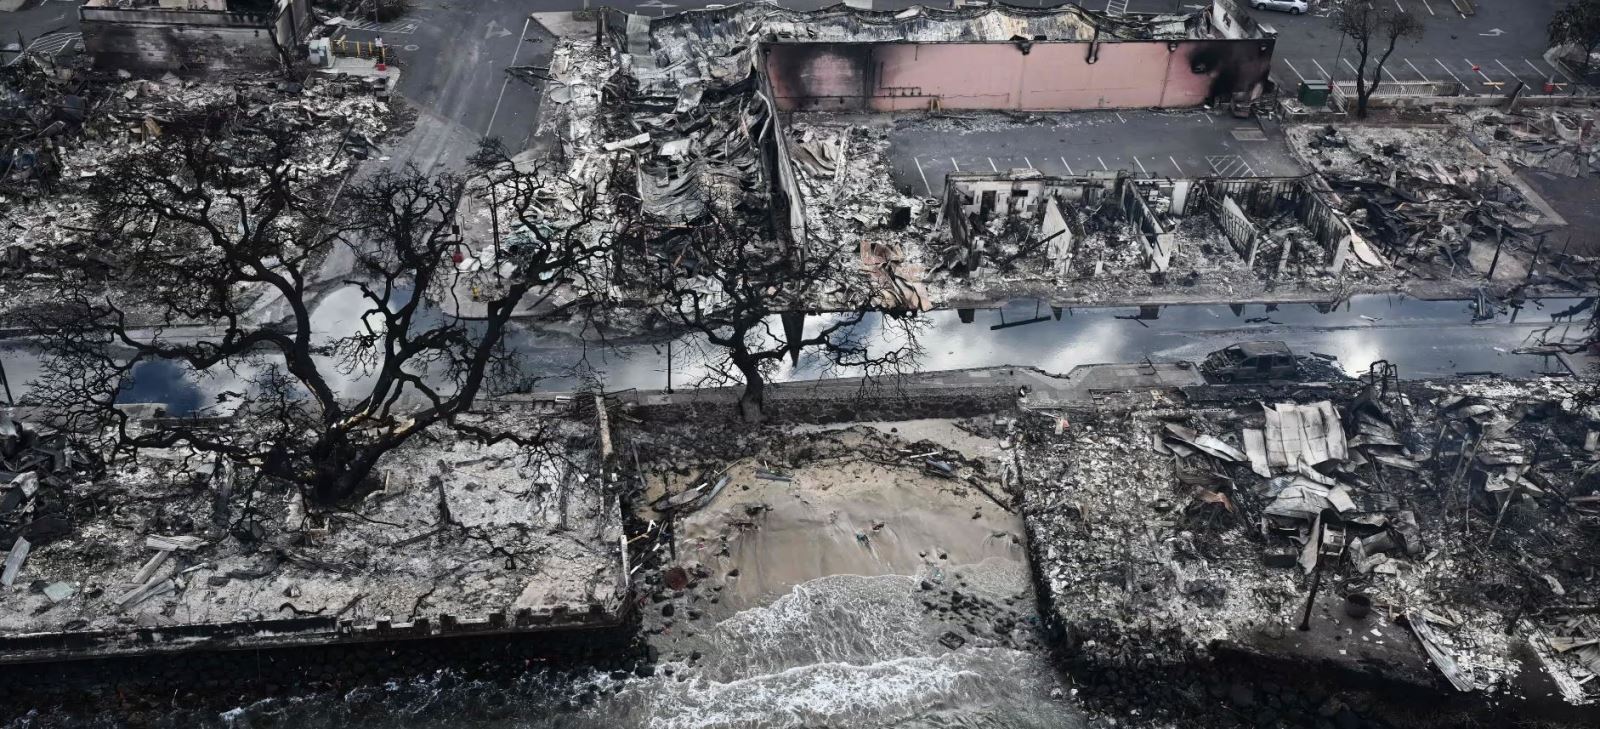 Toàn cảnh thảm họa cháy rừng san phẳng cả thị trấn ở Hawaii, ít nhất 67 người chết - Ảnh 1.